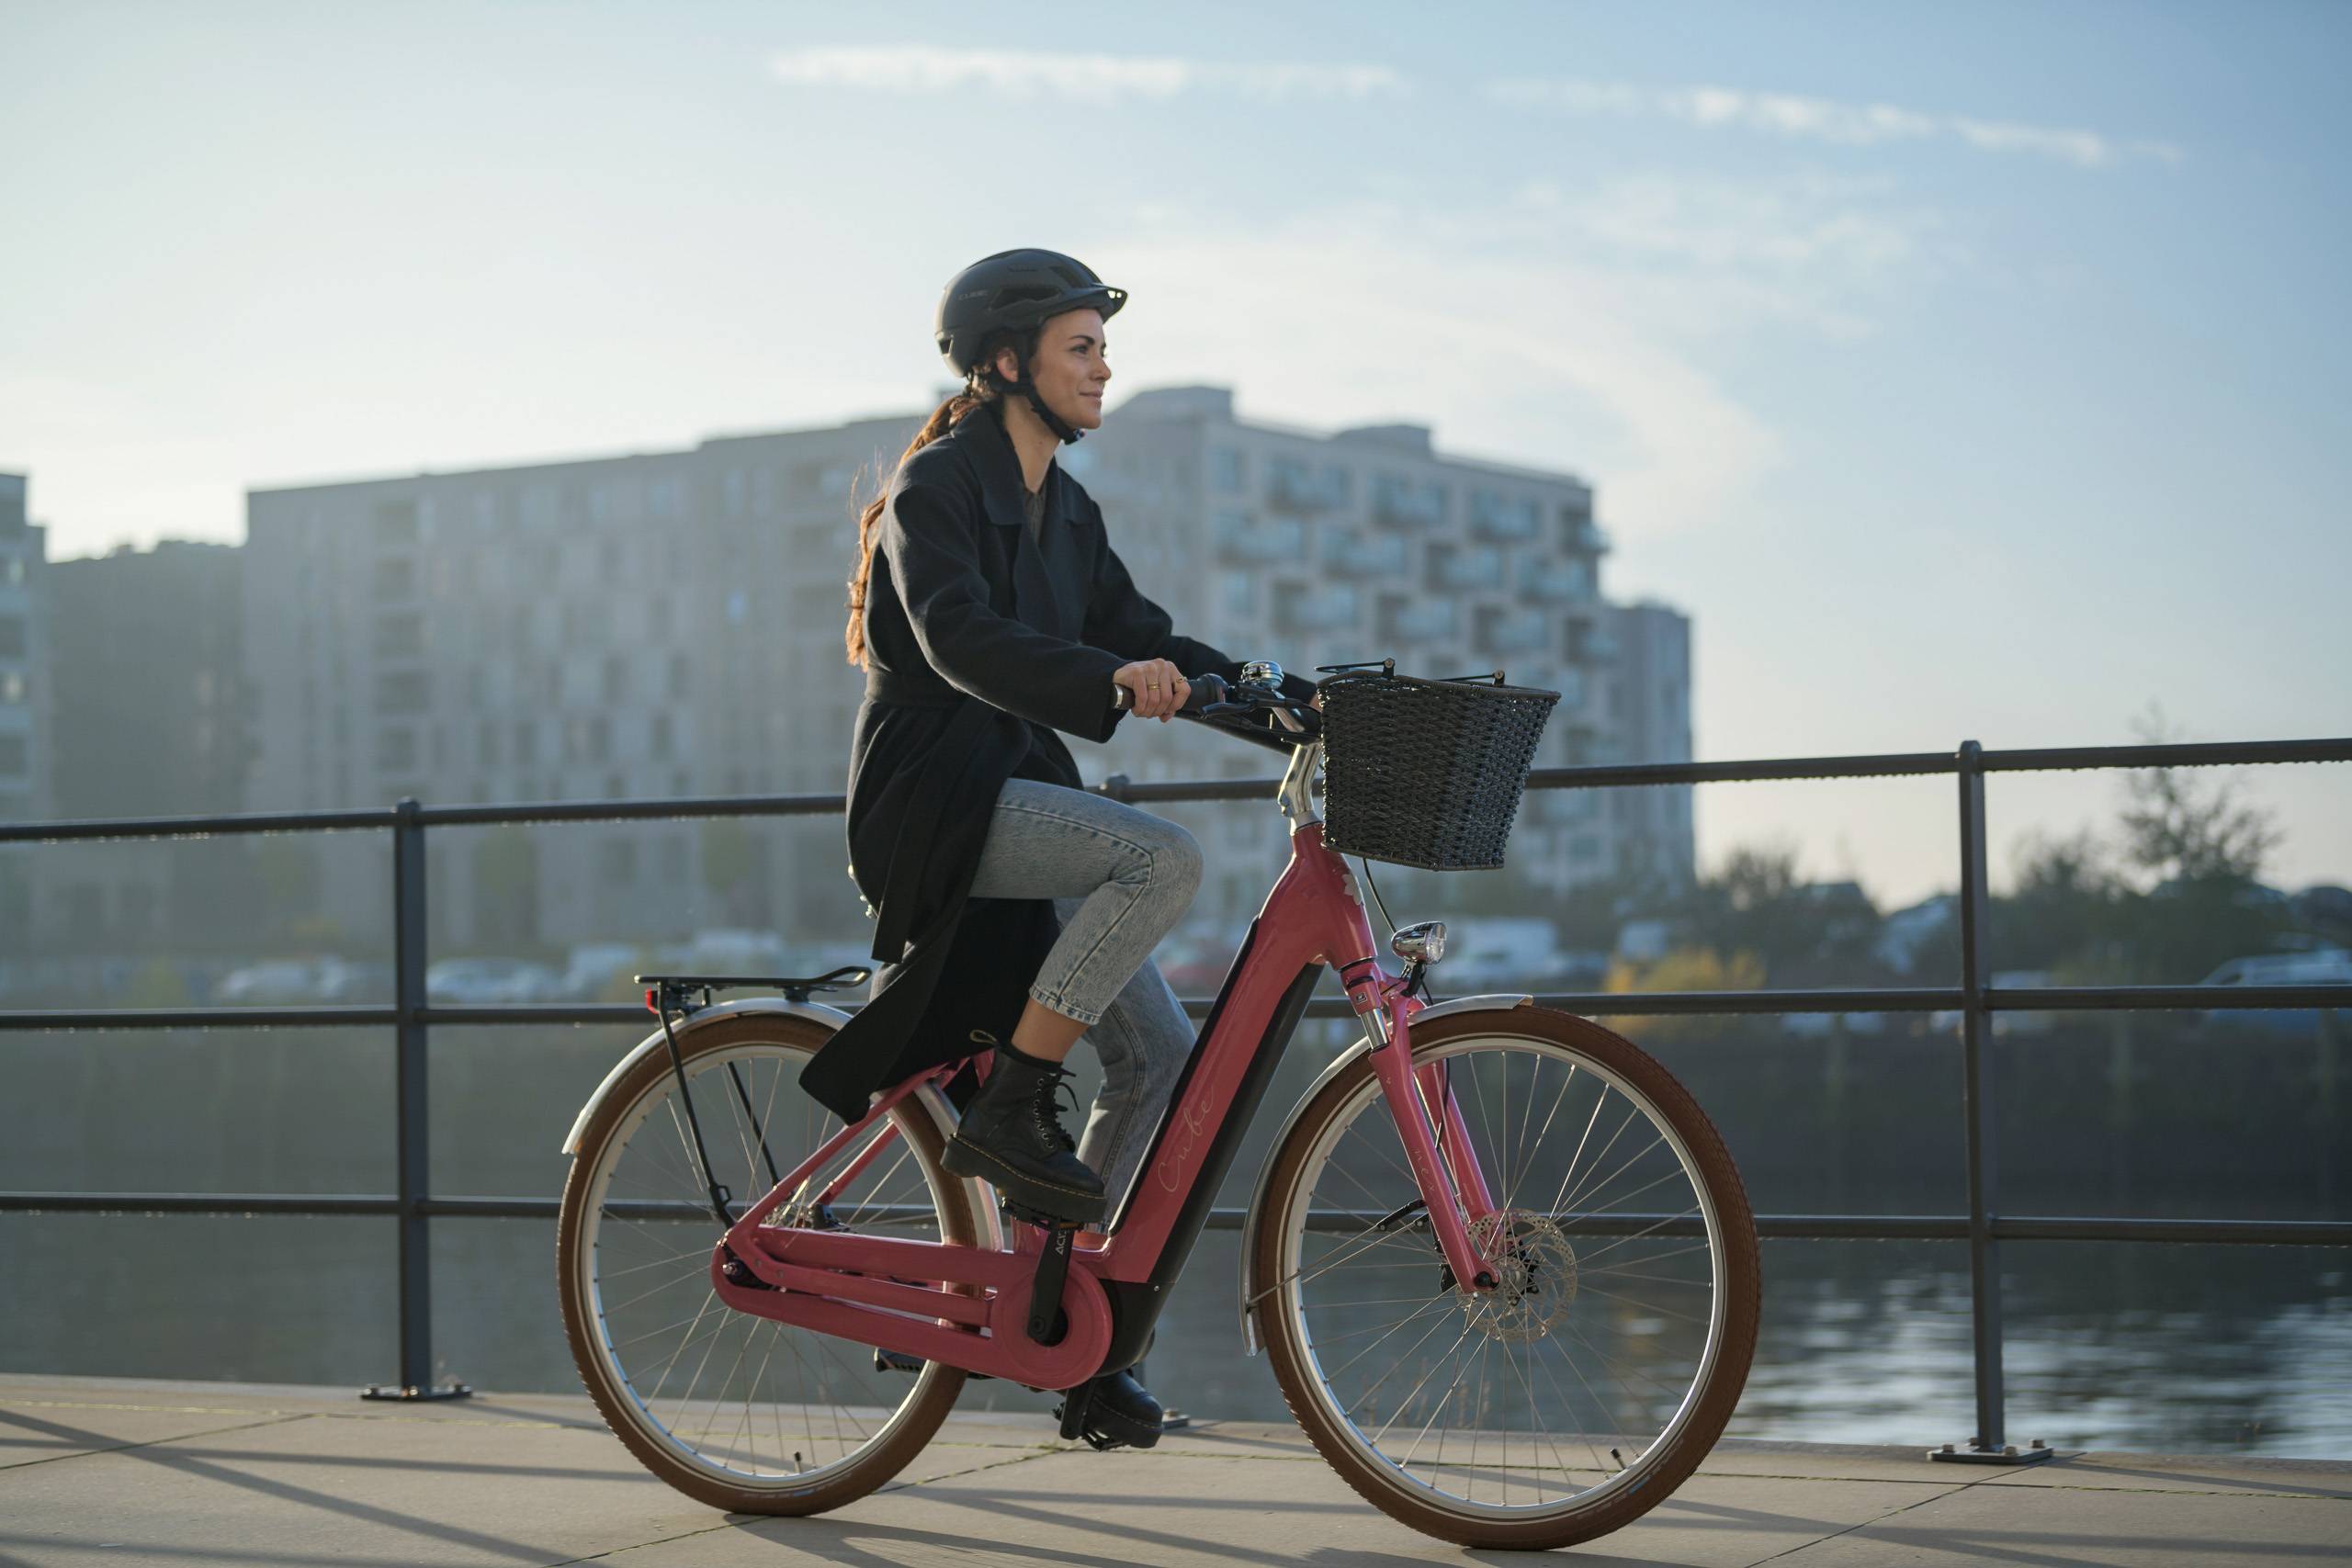 Frau mit Helm auf Cube Bike in urbaner Umgebung auf Brücke vor Fluss